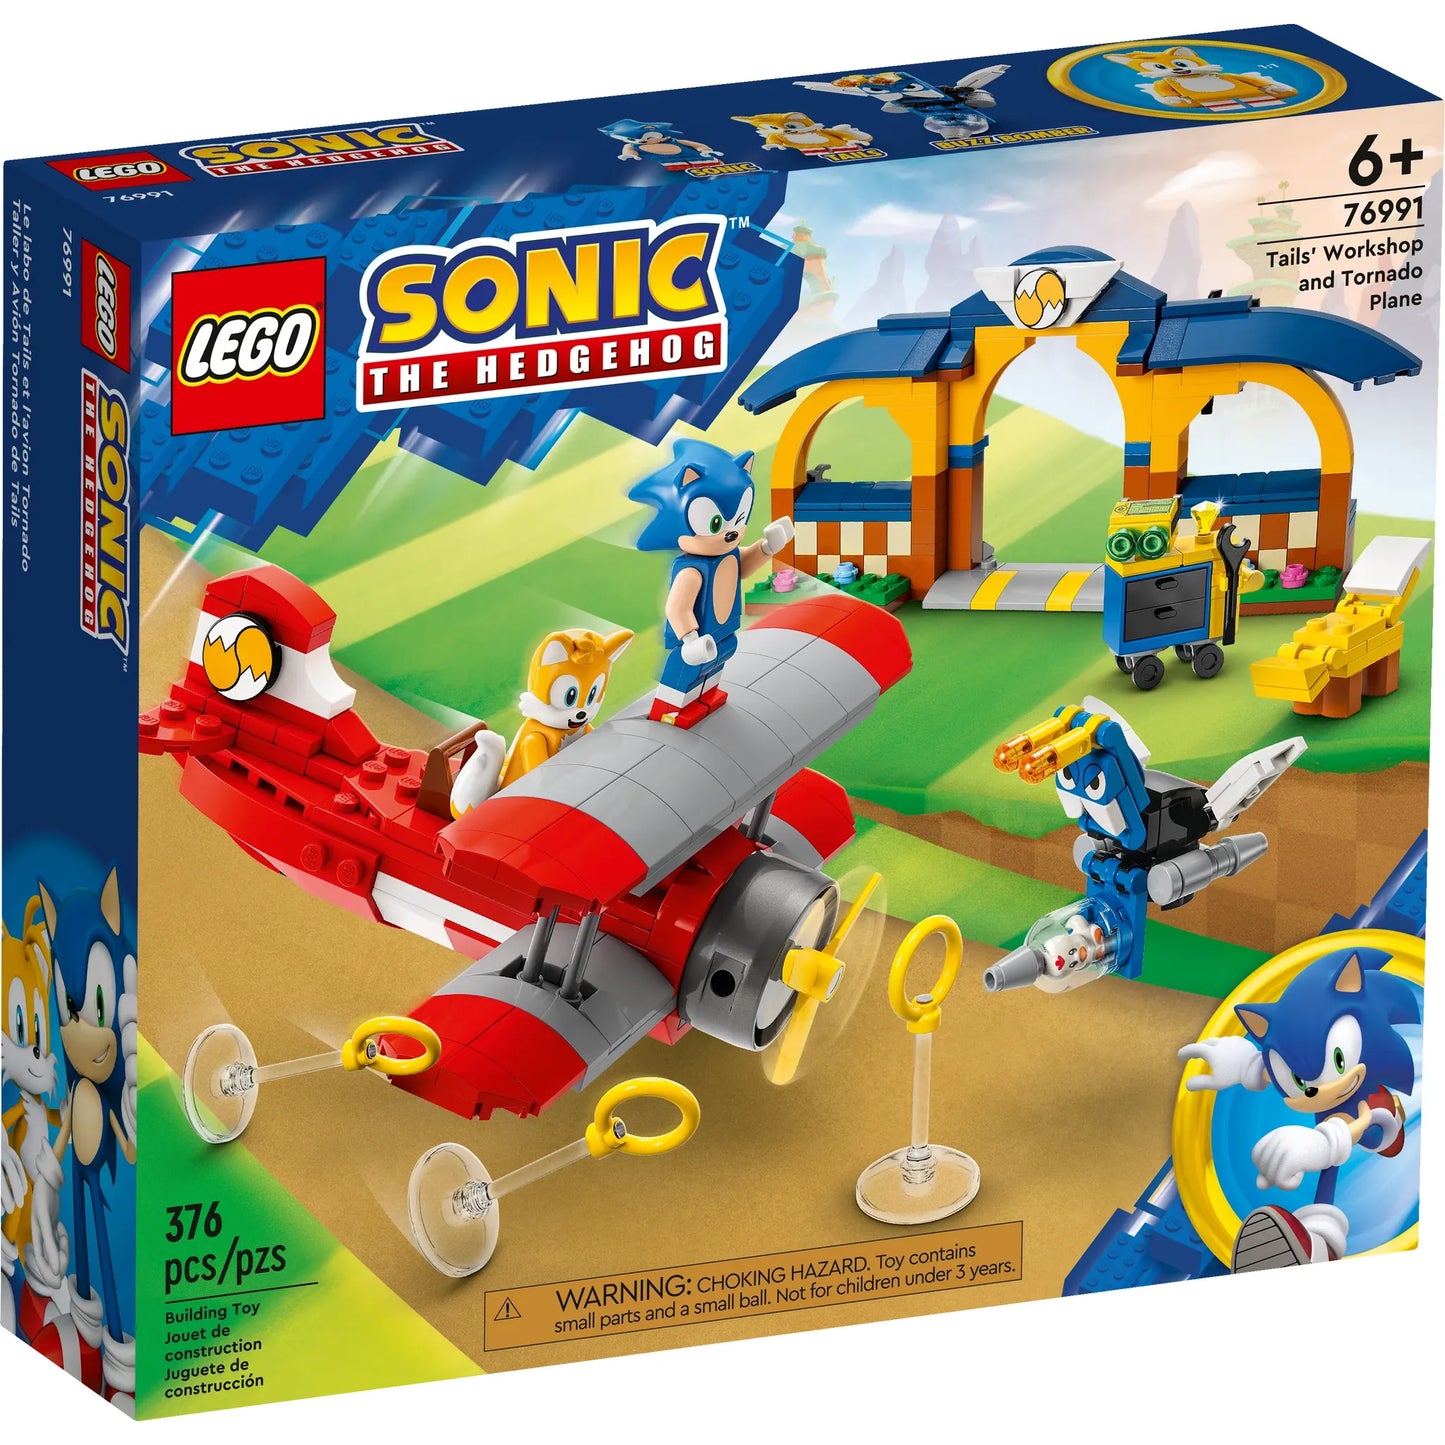 Sonic the Hedgehog: Tails' Workshop & Tornado Plane Building Set